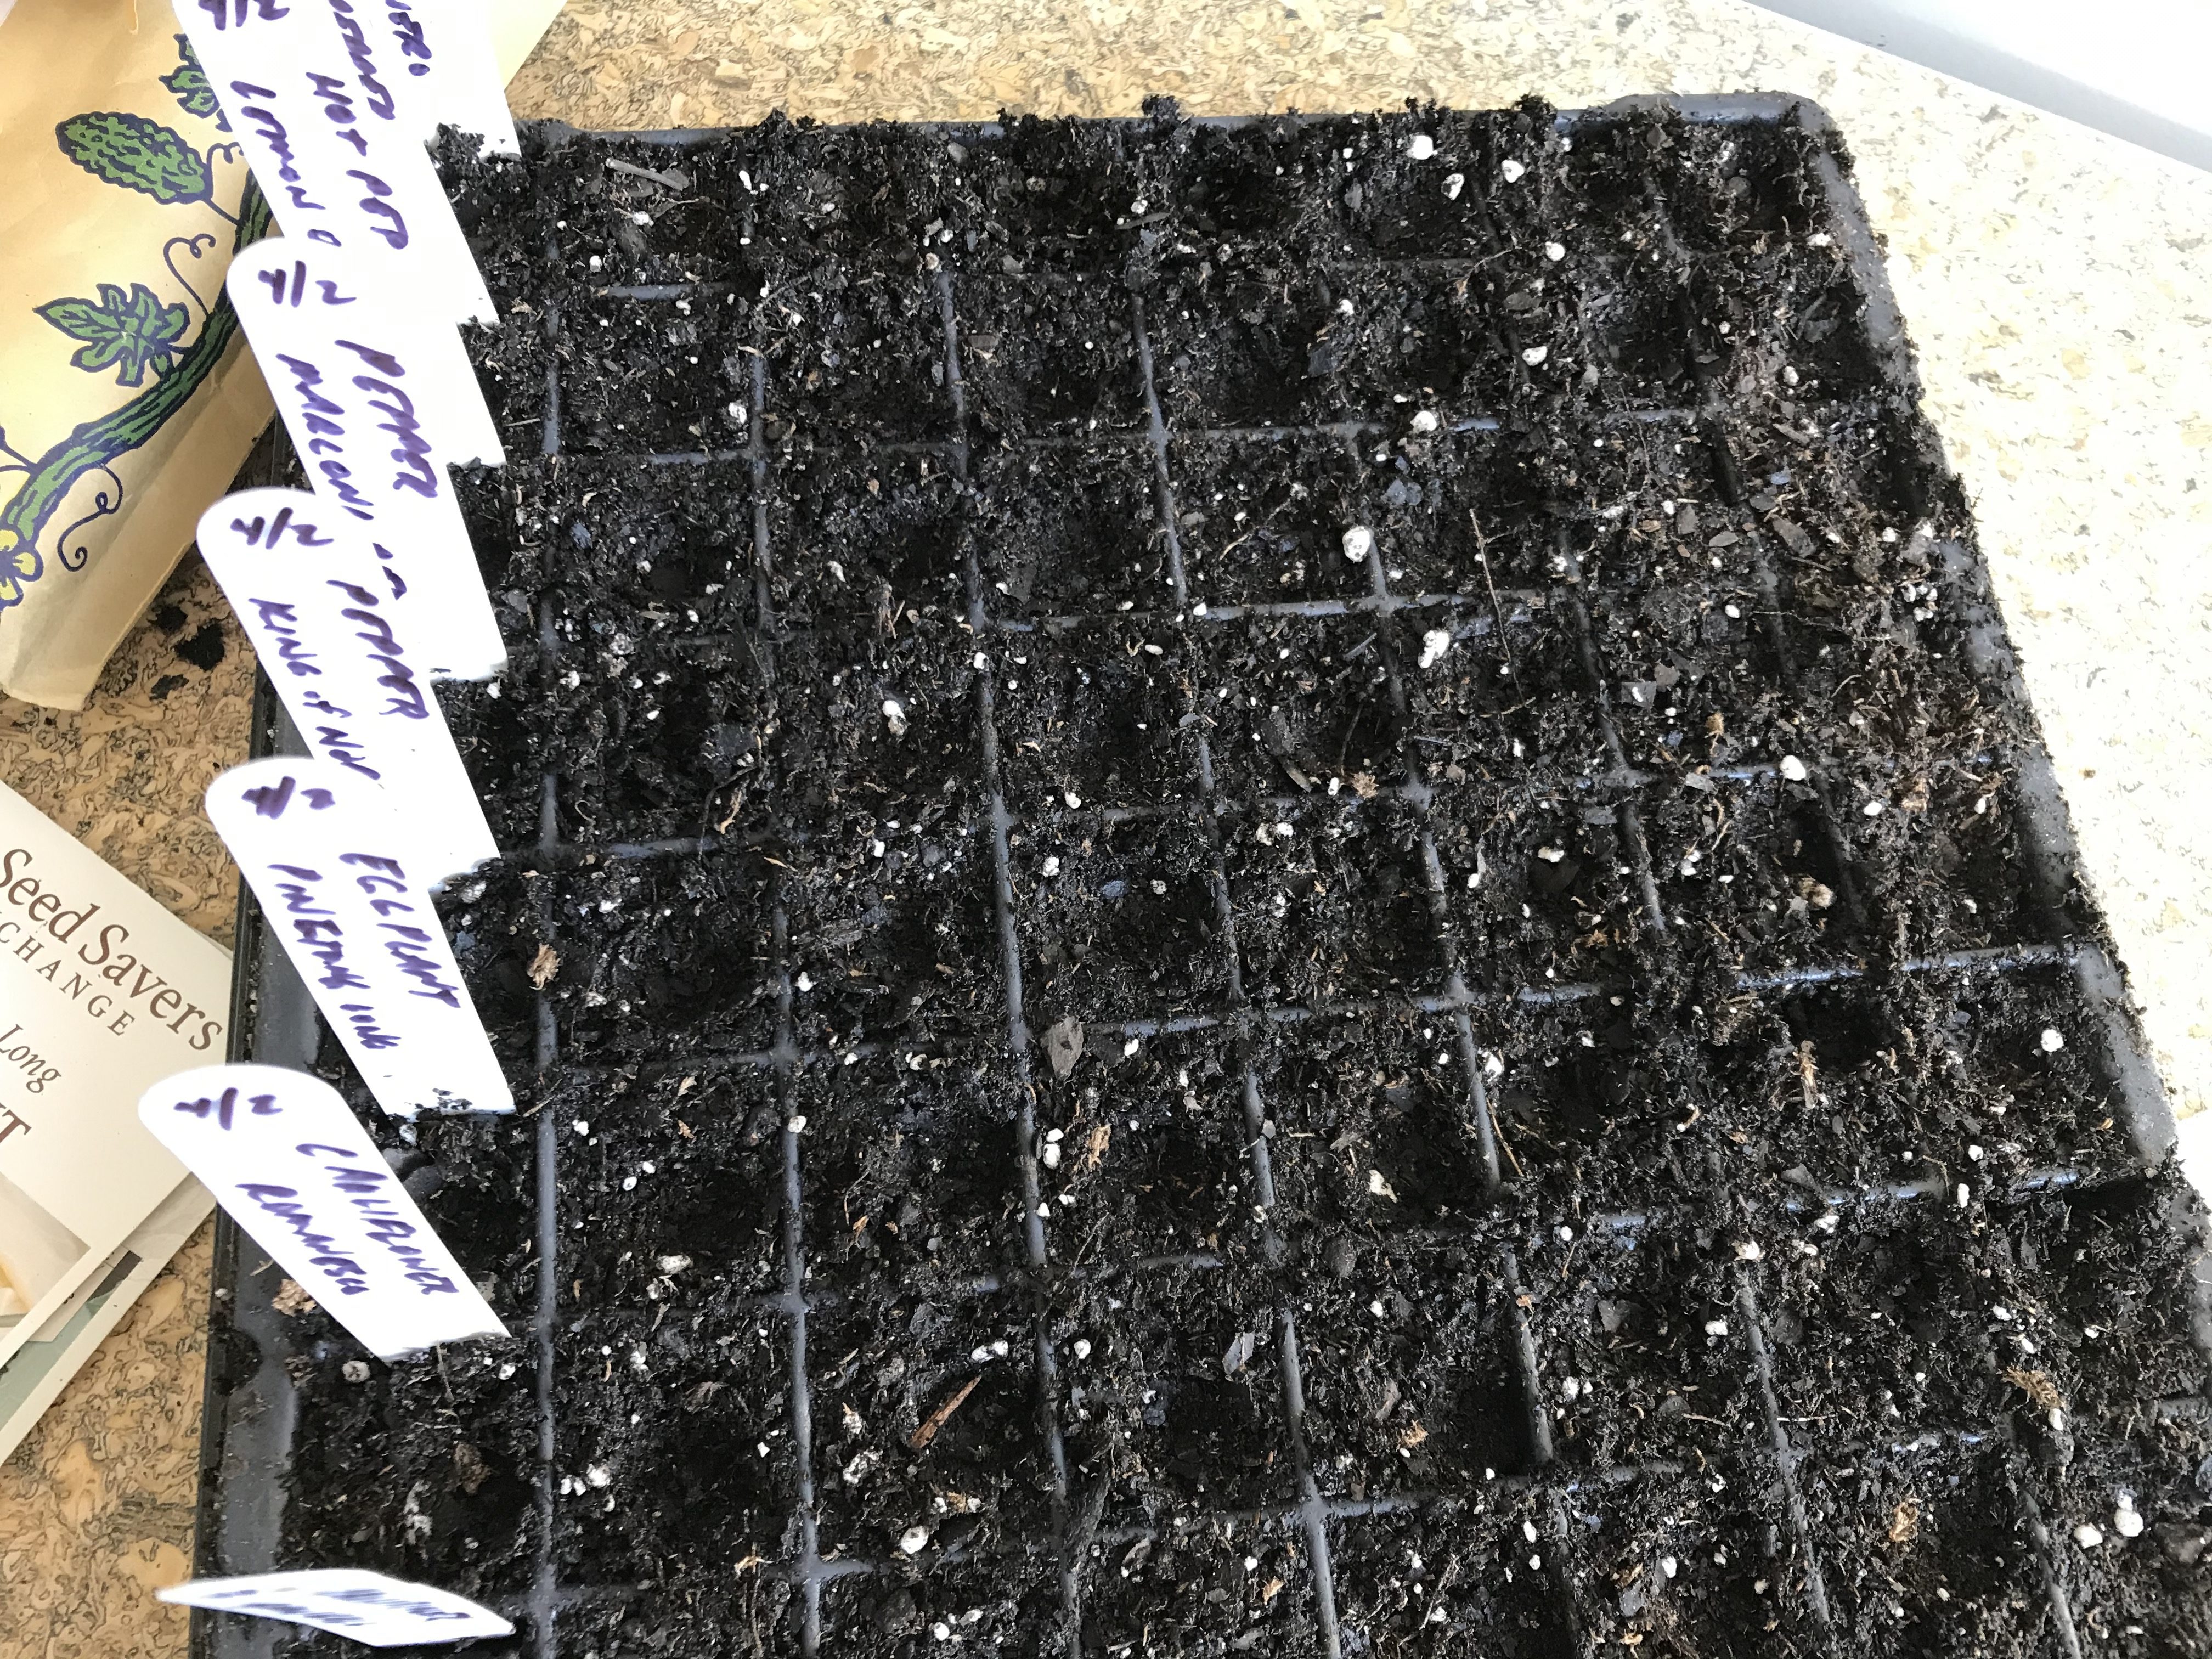 10 Steps to Starting Seedlings Indoors